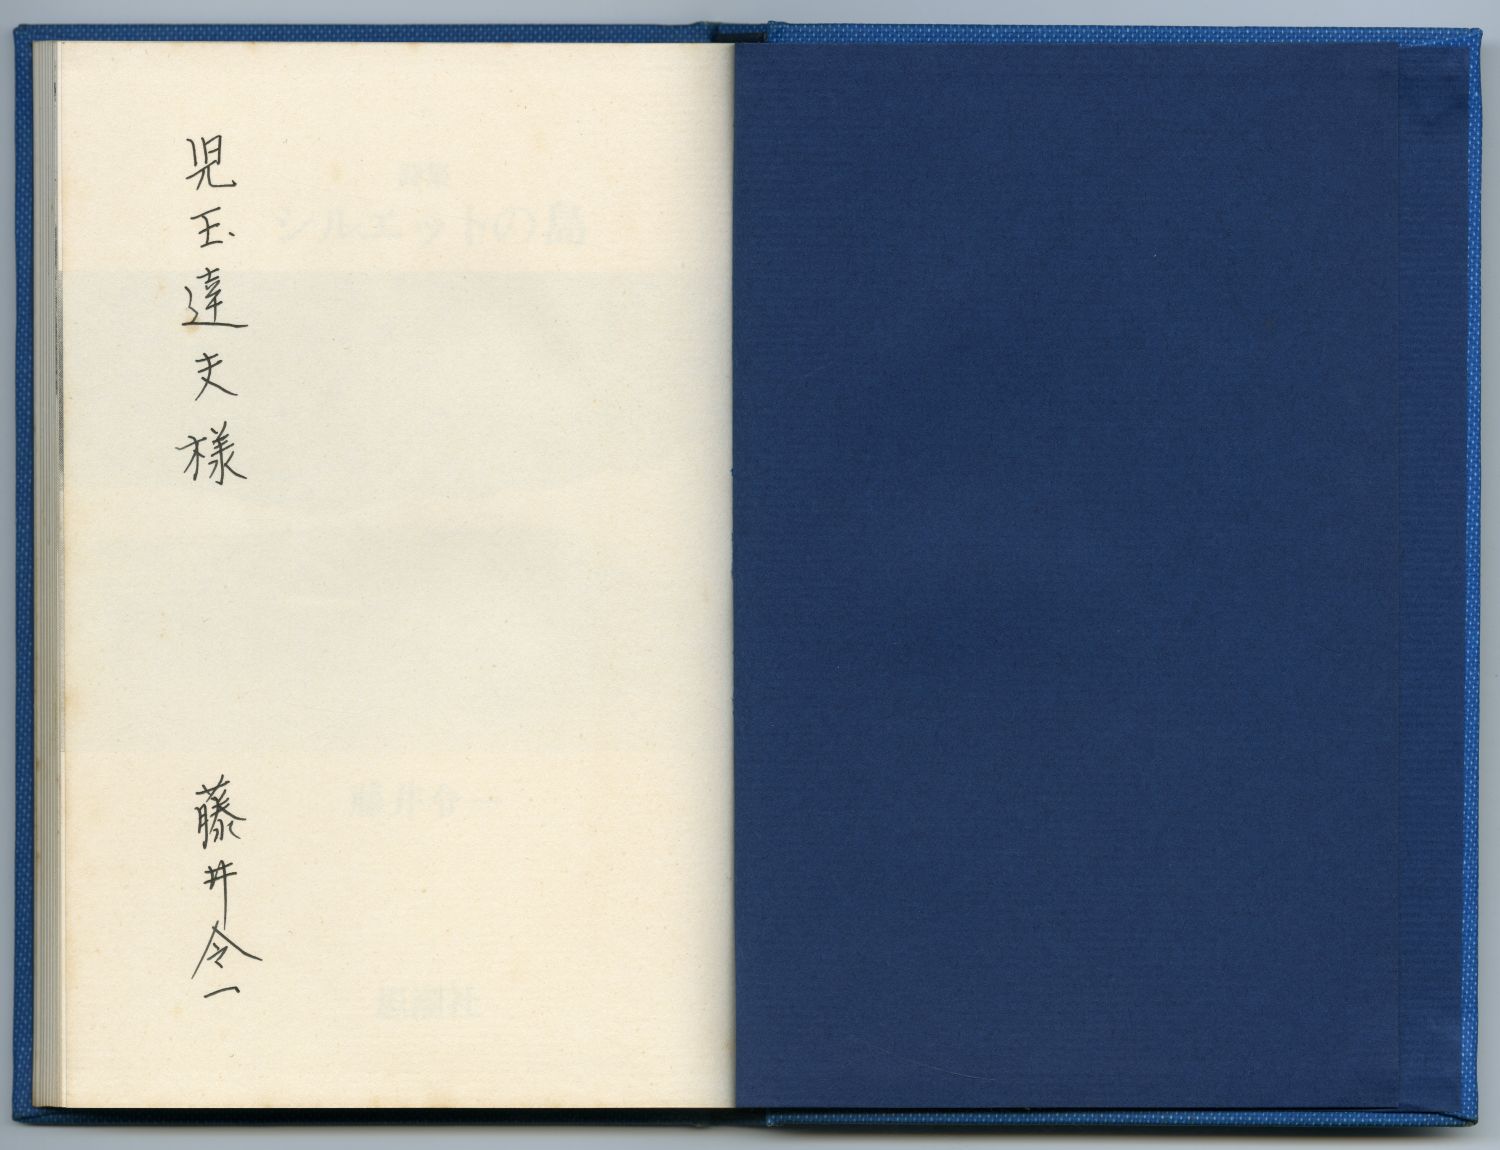 藤井令一『詩集　シルエットの島』（1976年、思潮社）見返しの献呈署名